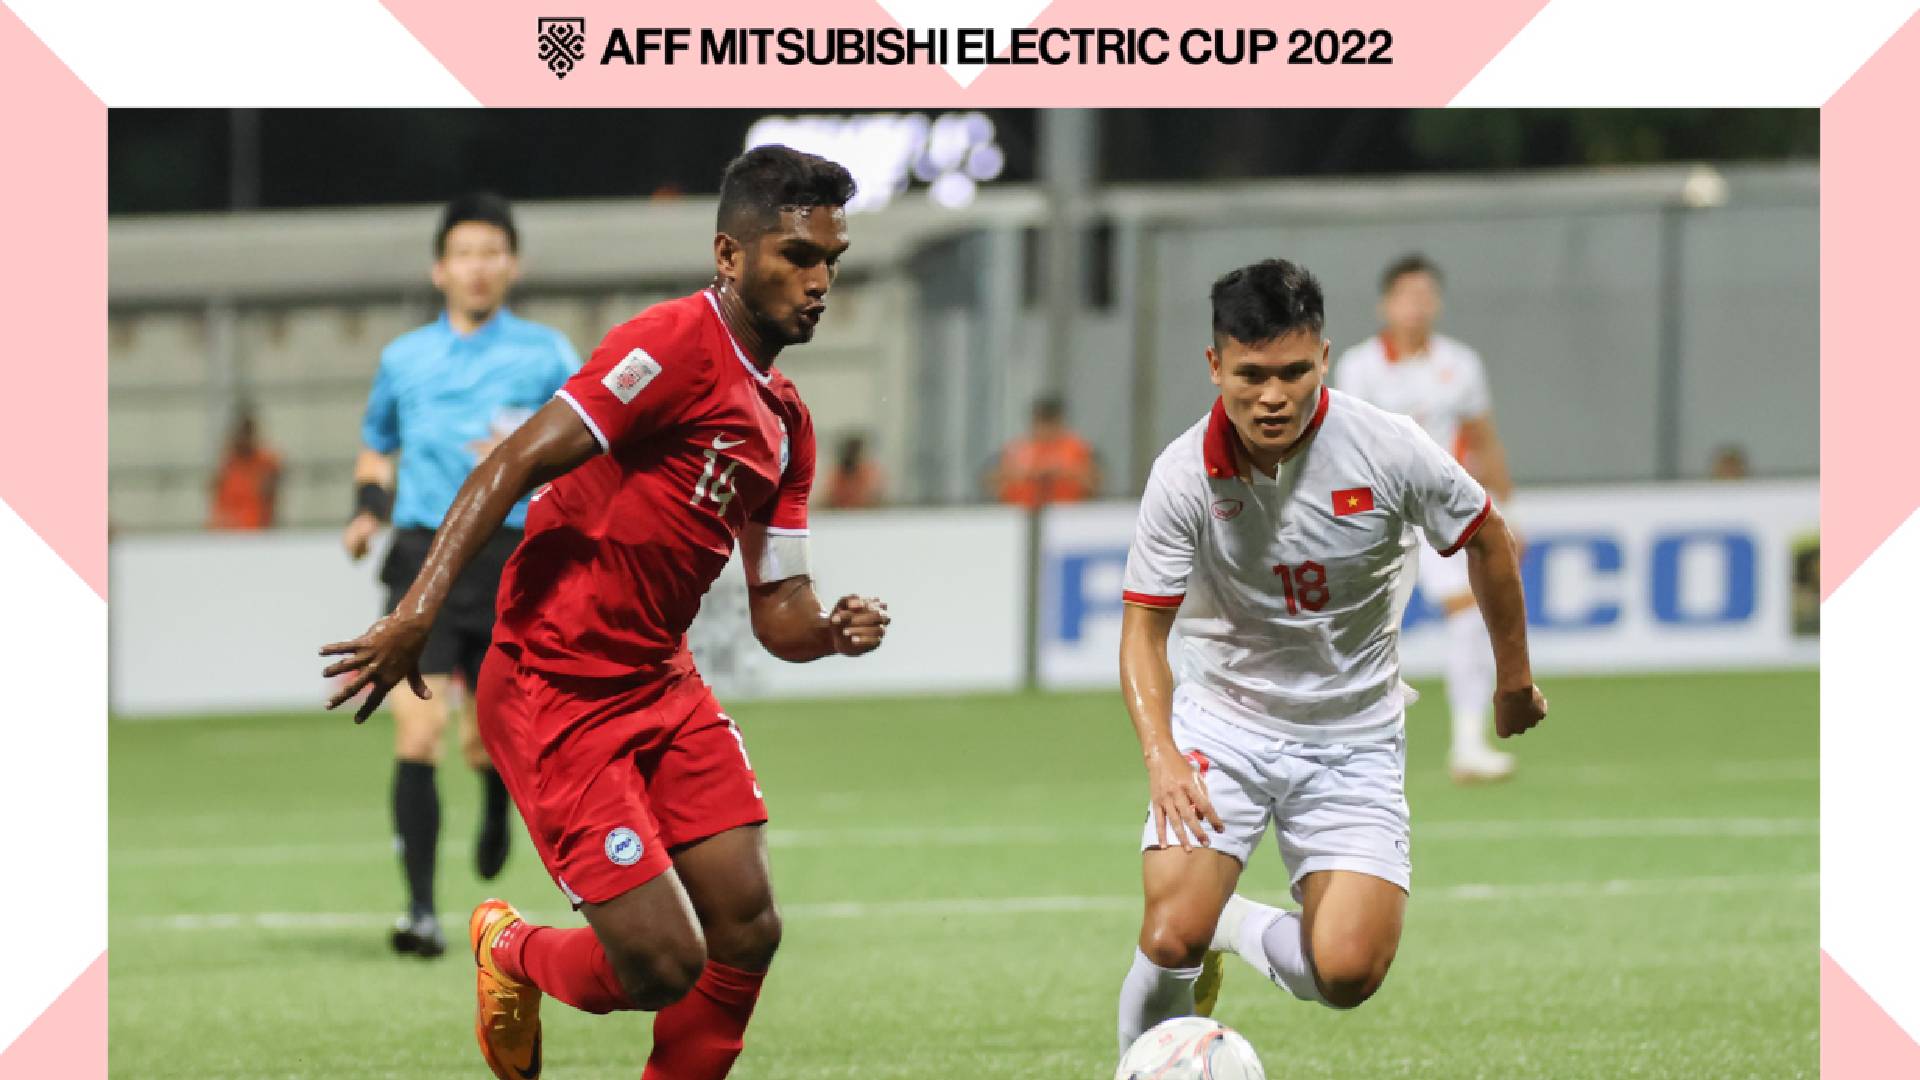 Singapura Vietnam Piala AFF 2022 FA Singapore Piala AFF: Vietnam, Singapura Kongsi Satu Mata